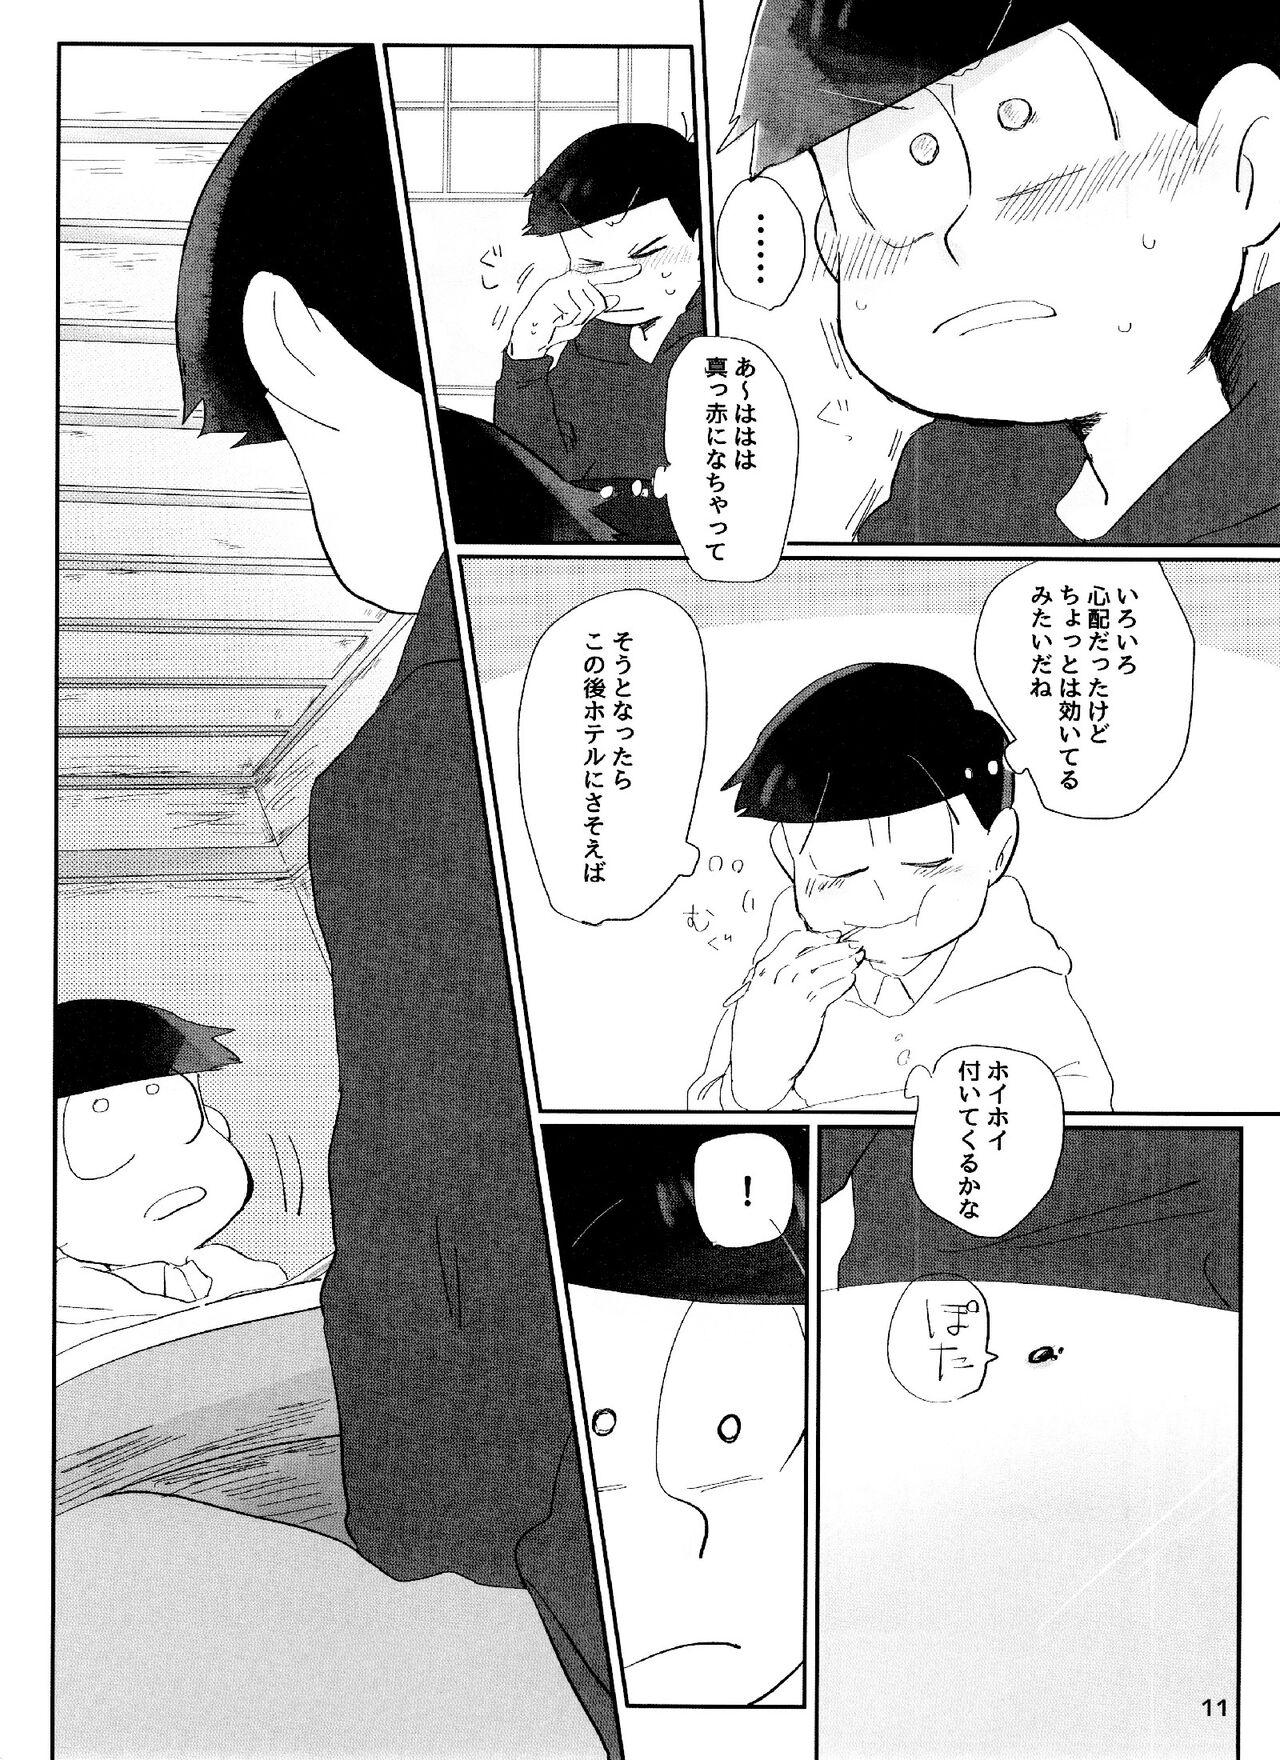 Teasing yoi kono × × hon - Osomatsu san Face Fuck - Page 11